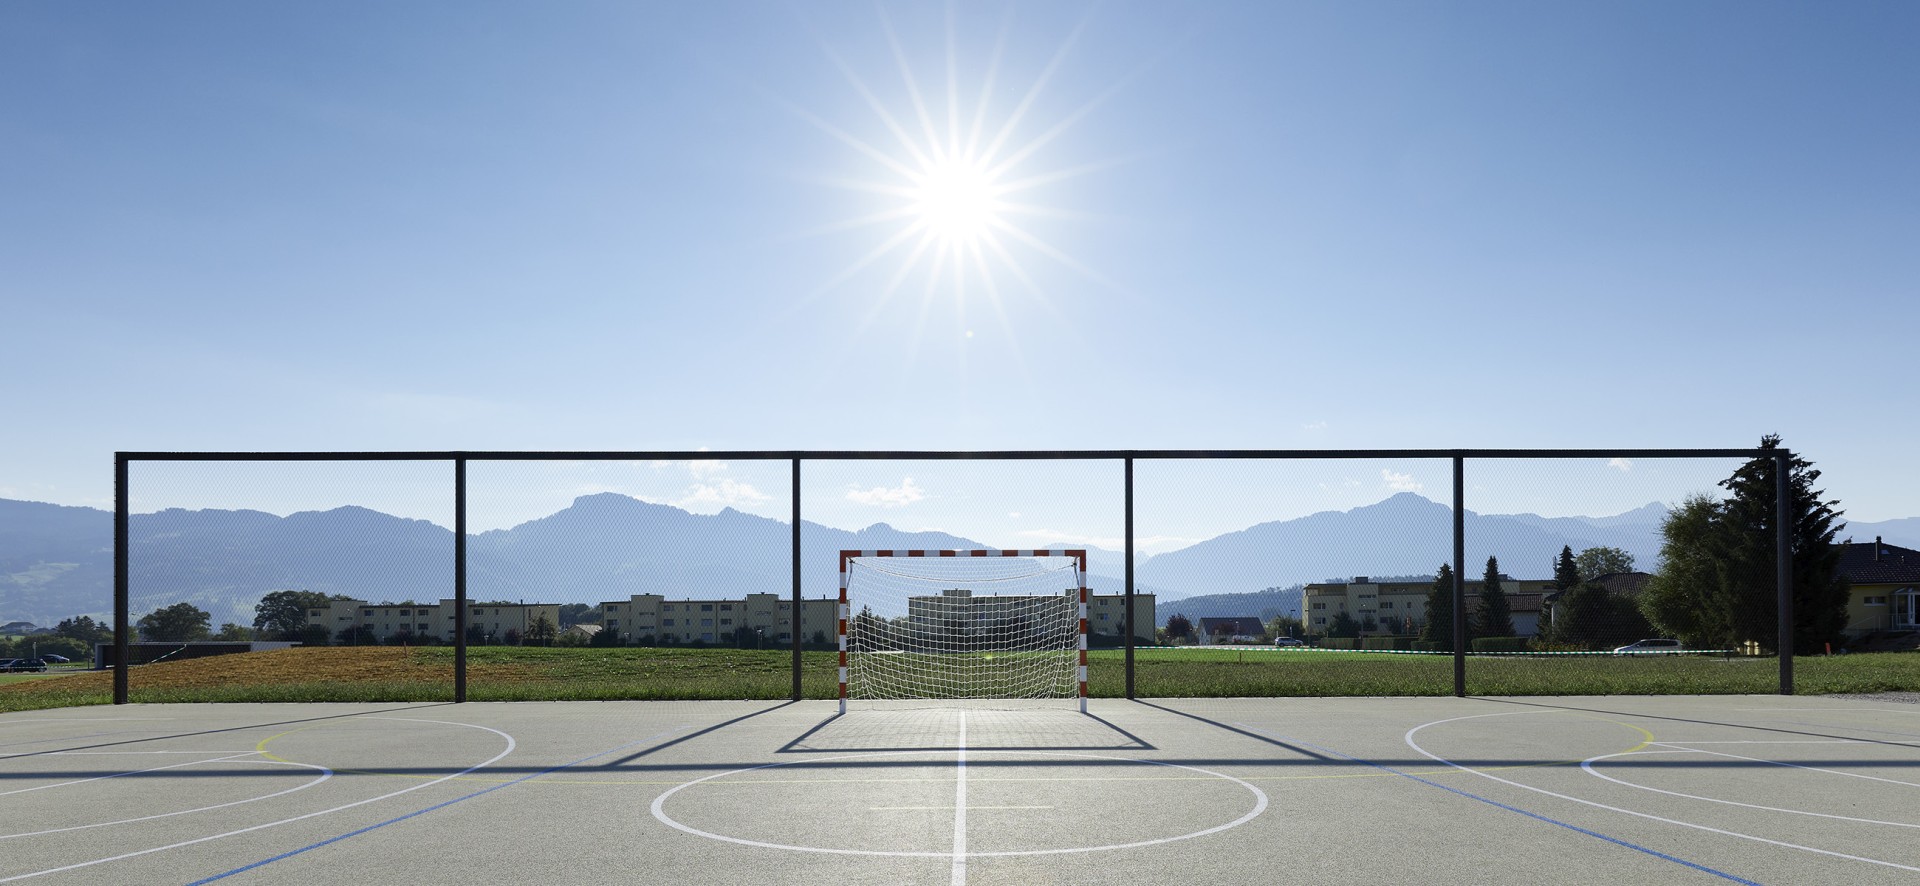 un terrain de sport avec une clôture moderne d'arrêt de la balle en webnet